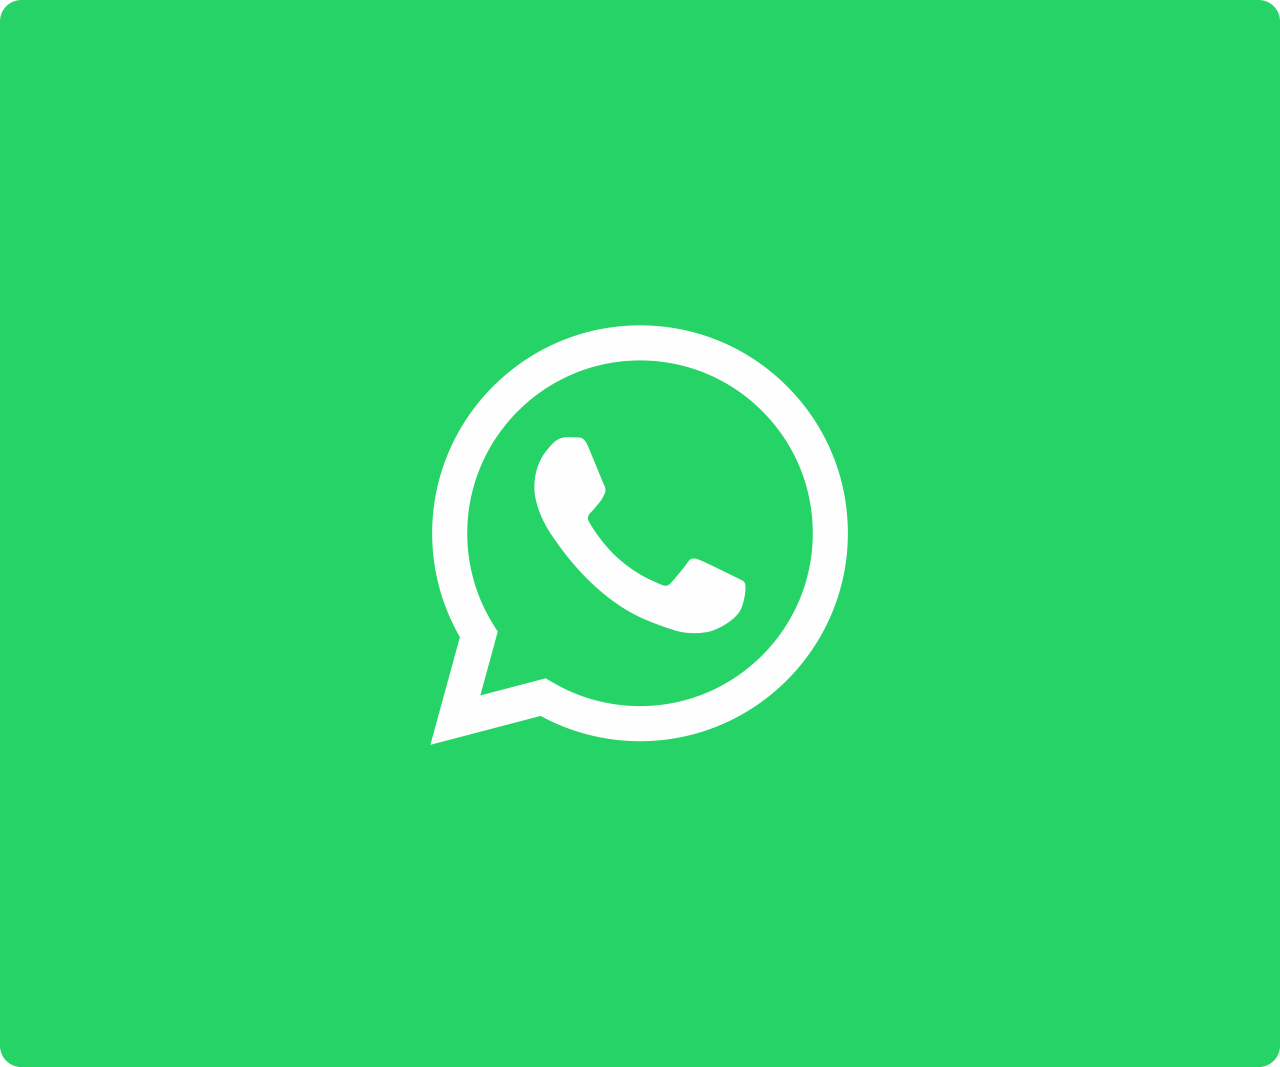 Whatsapp Logo - WhatsApp Brand Resources